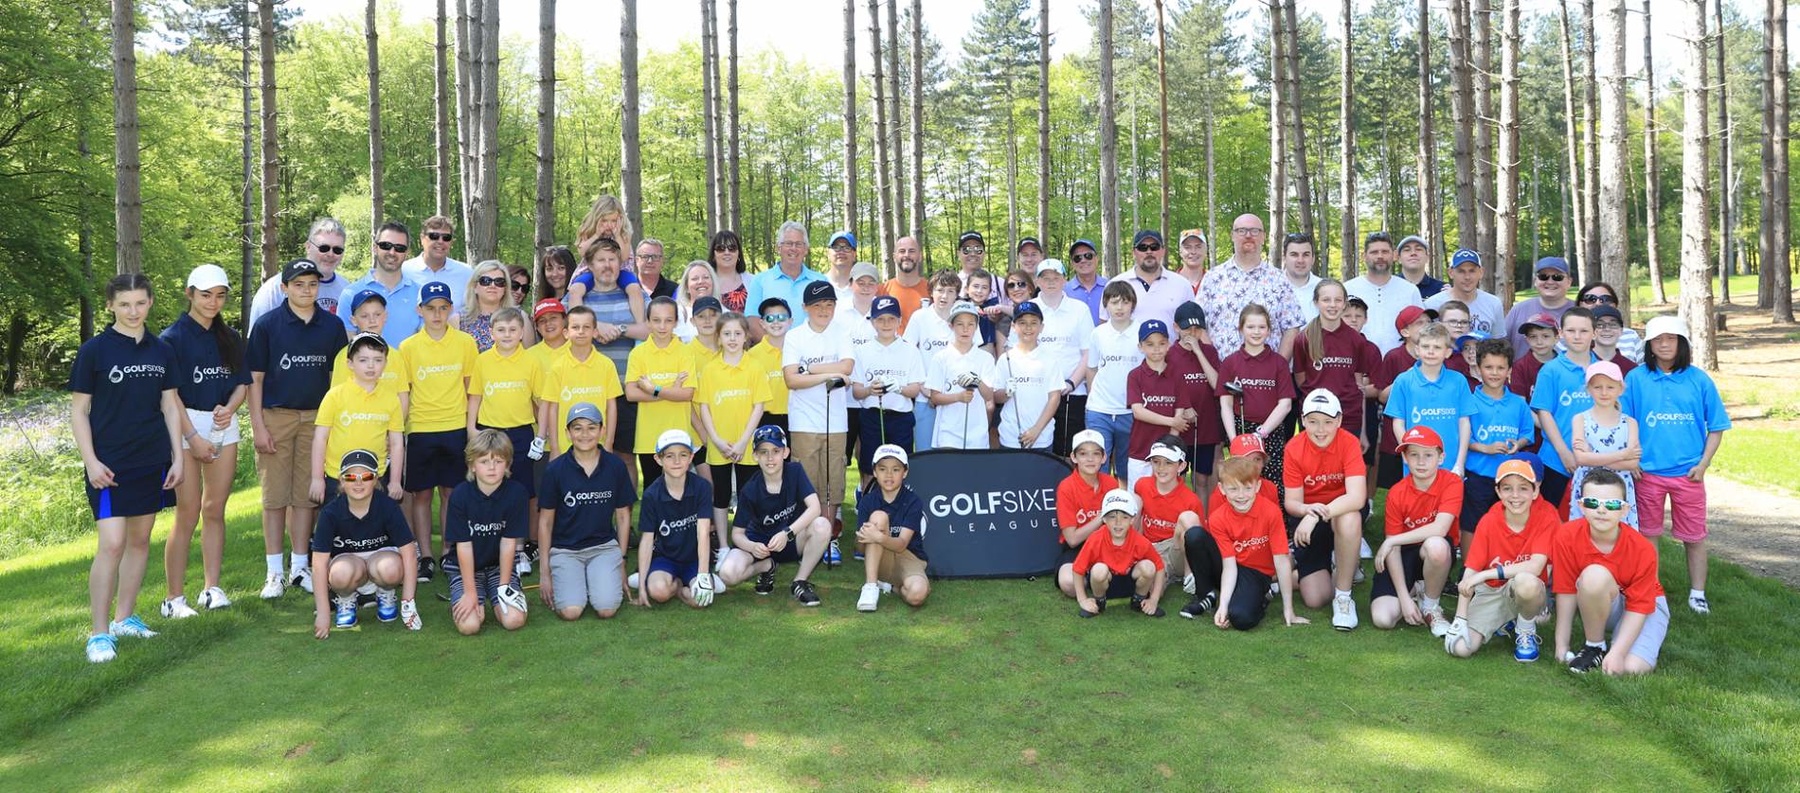 GolfSixes groupheader